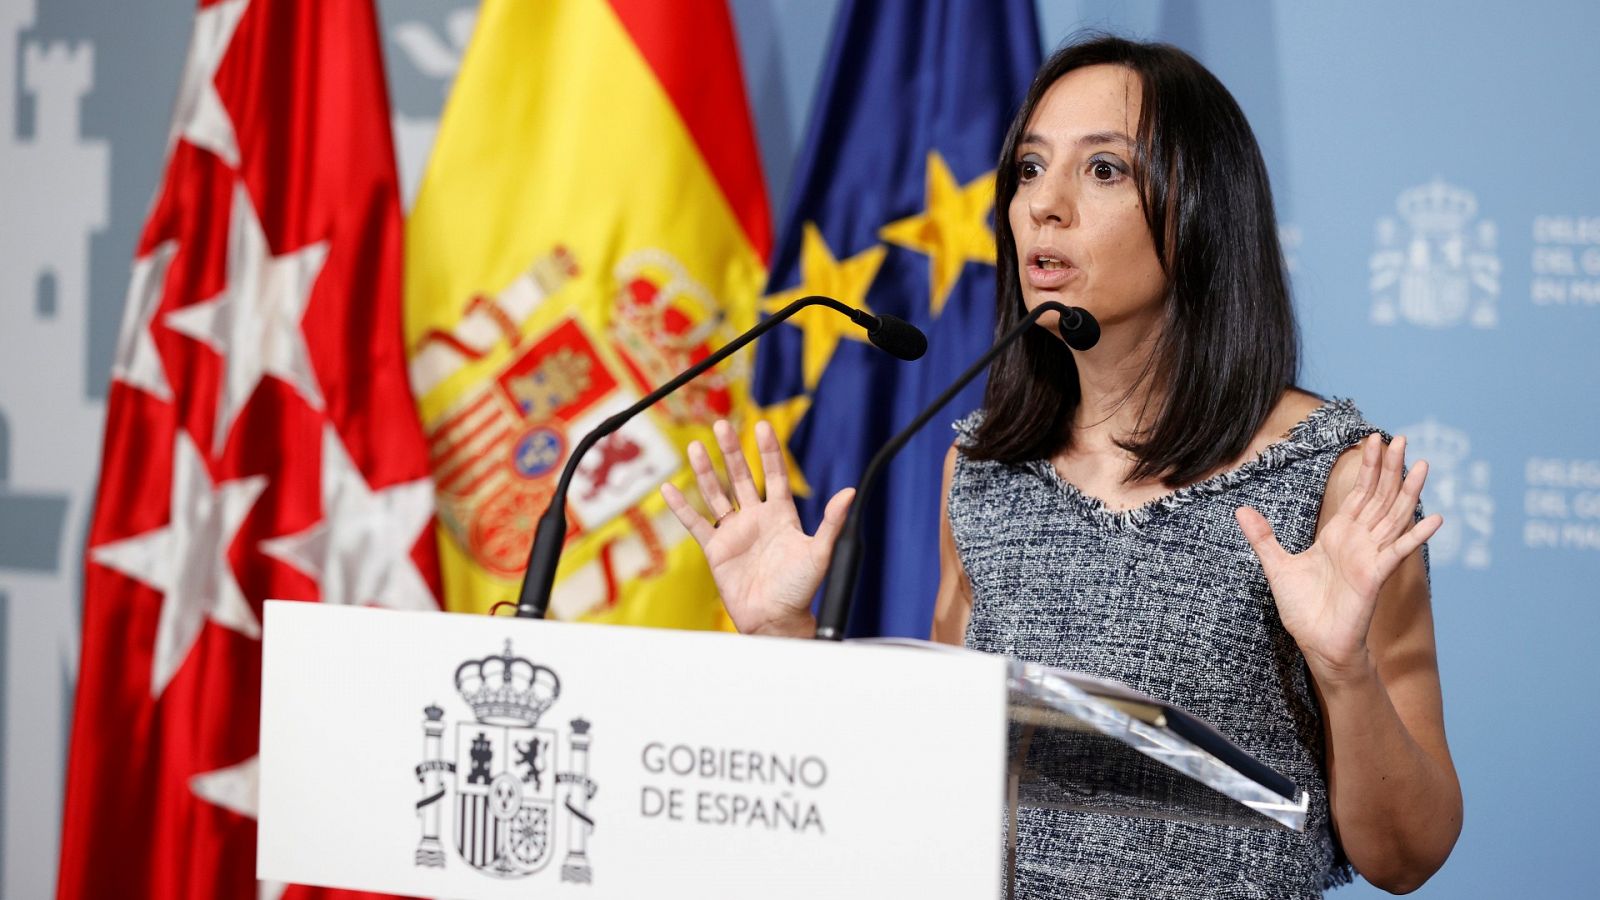 La delegada del Gobierno en Madrid rechaza dimitir: "Tengo la conciencia tranquila"